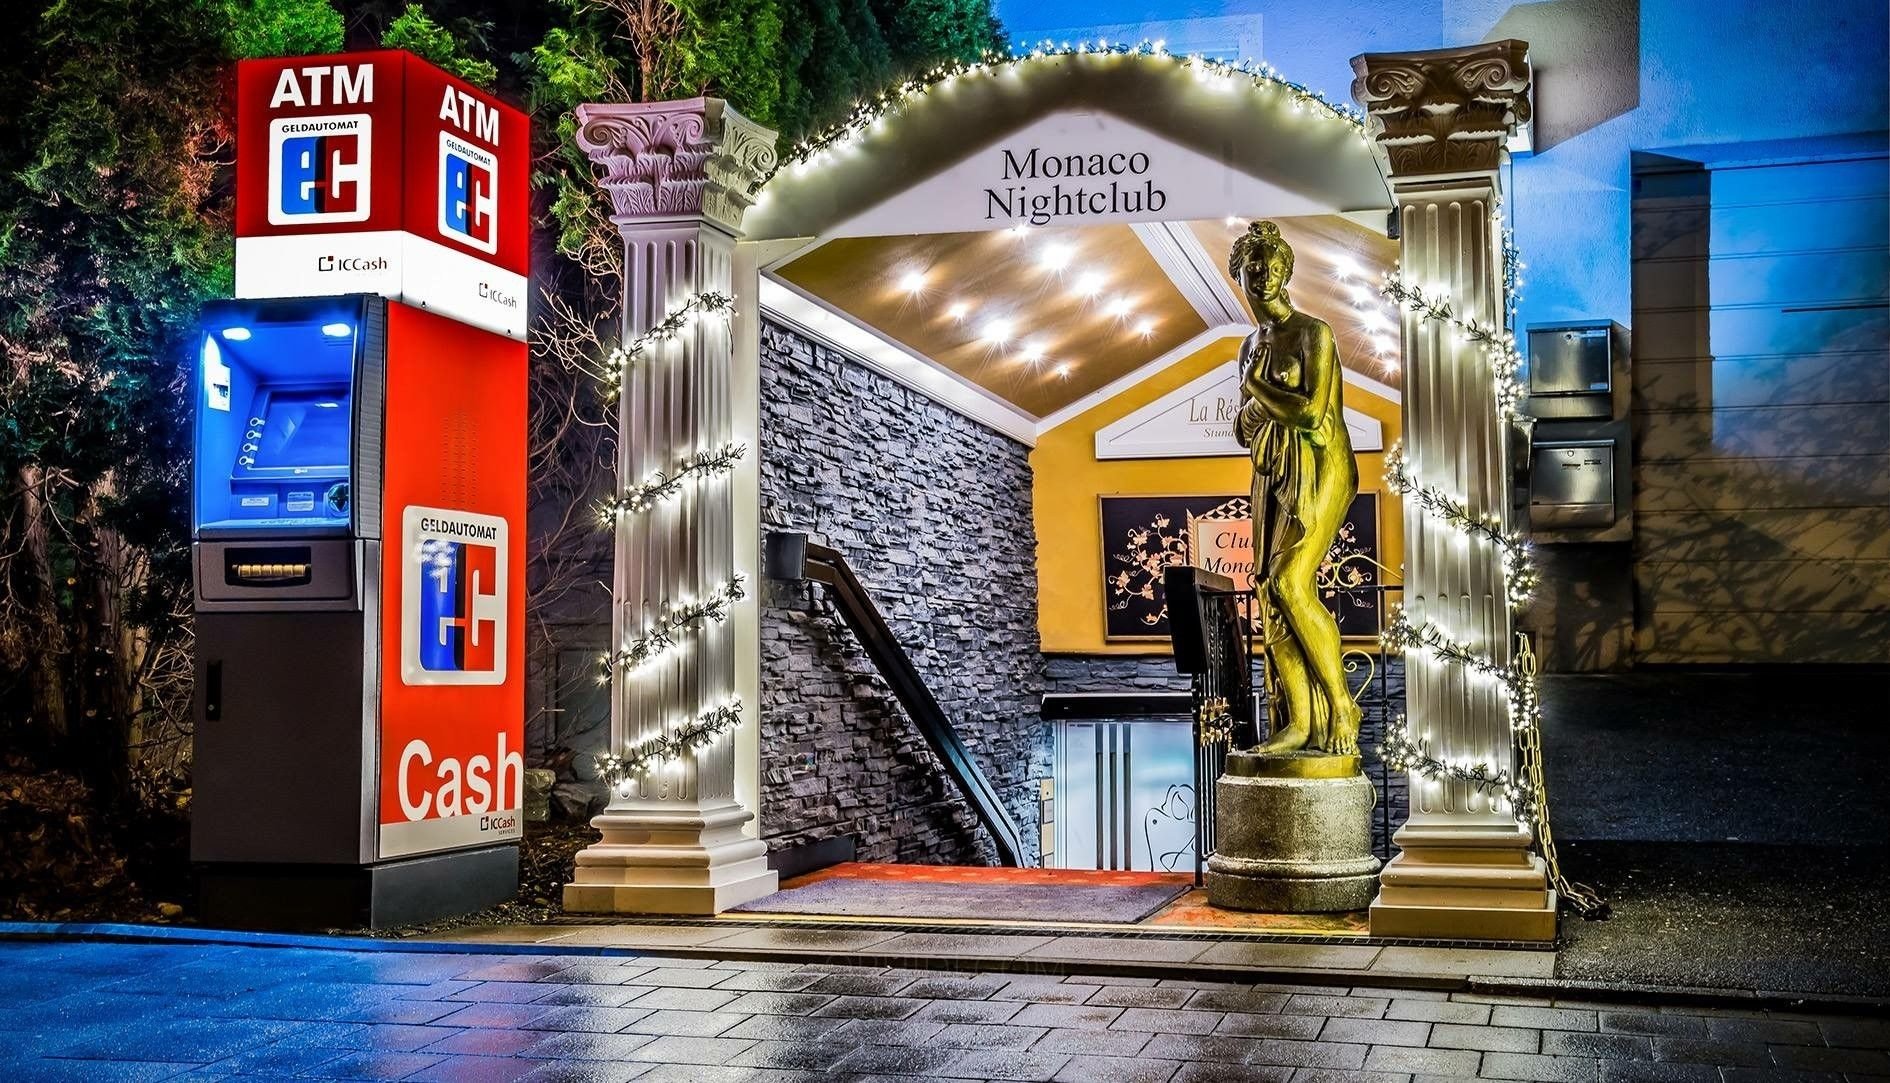 Best Swingers Clubs in Munich - place Monaco Nightclub